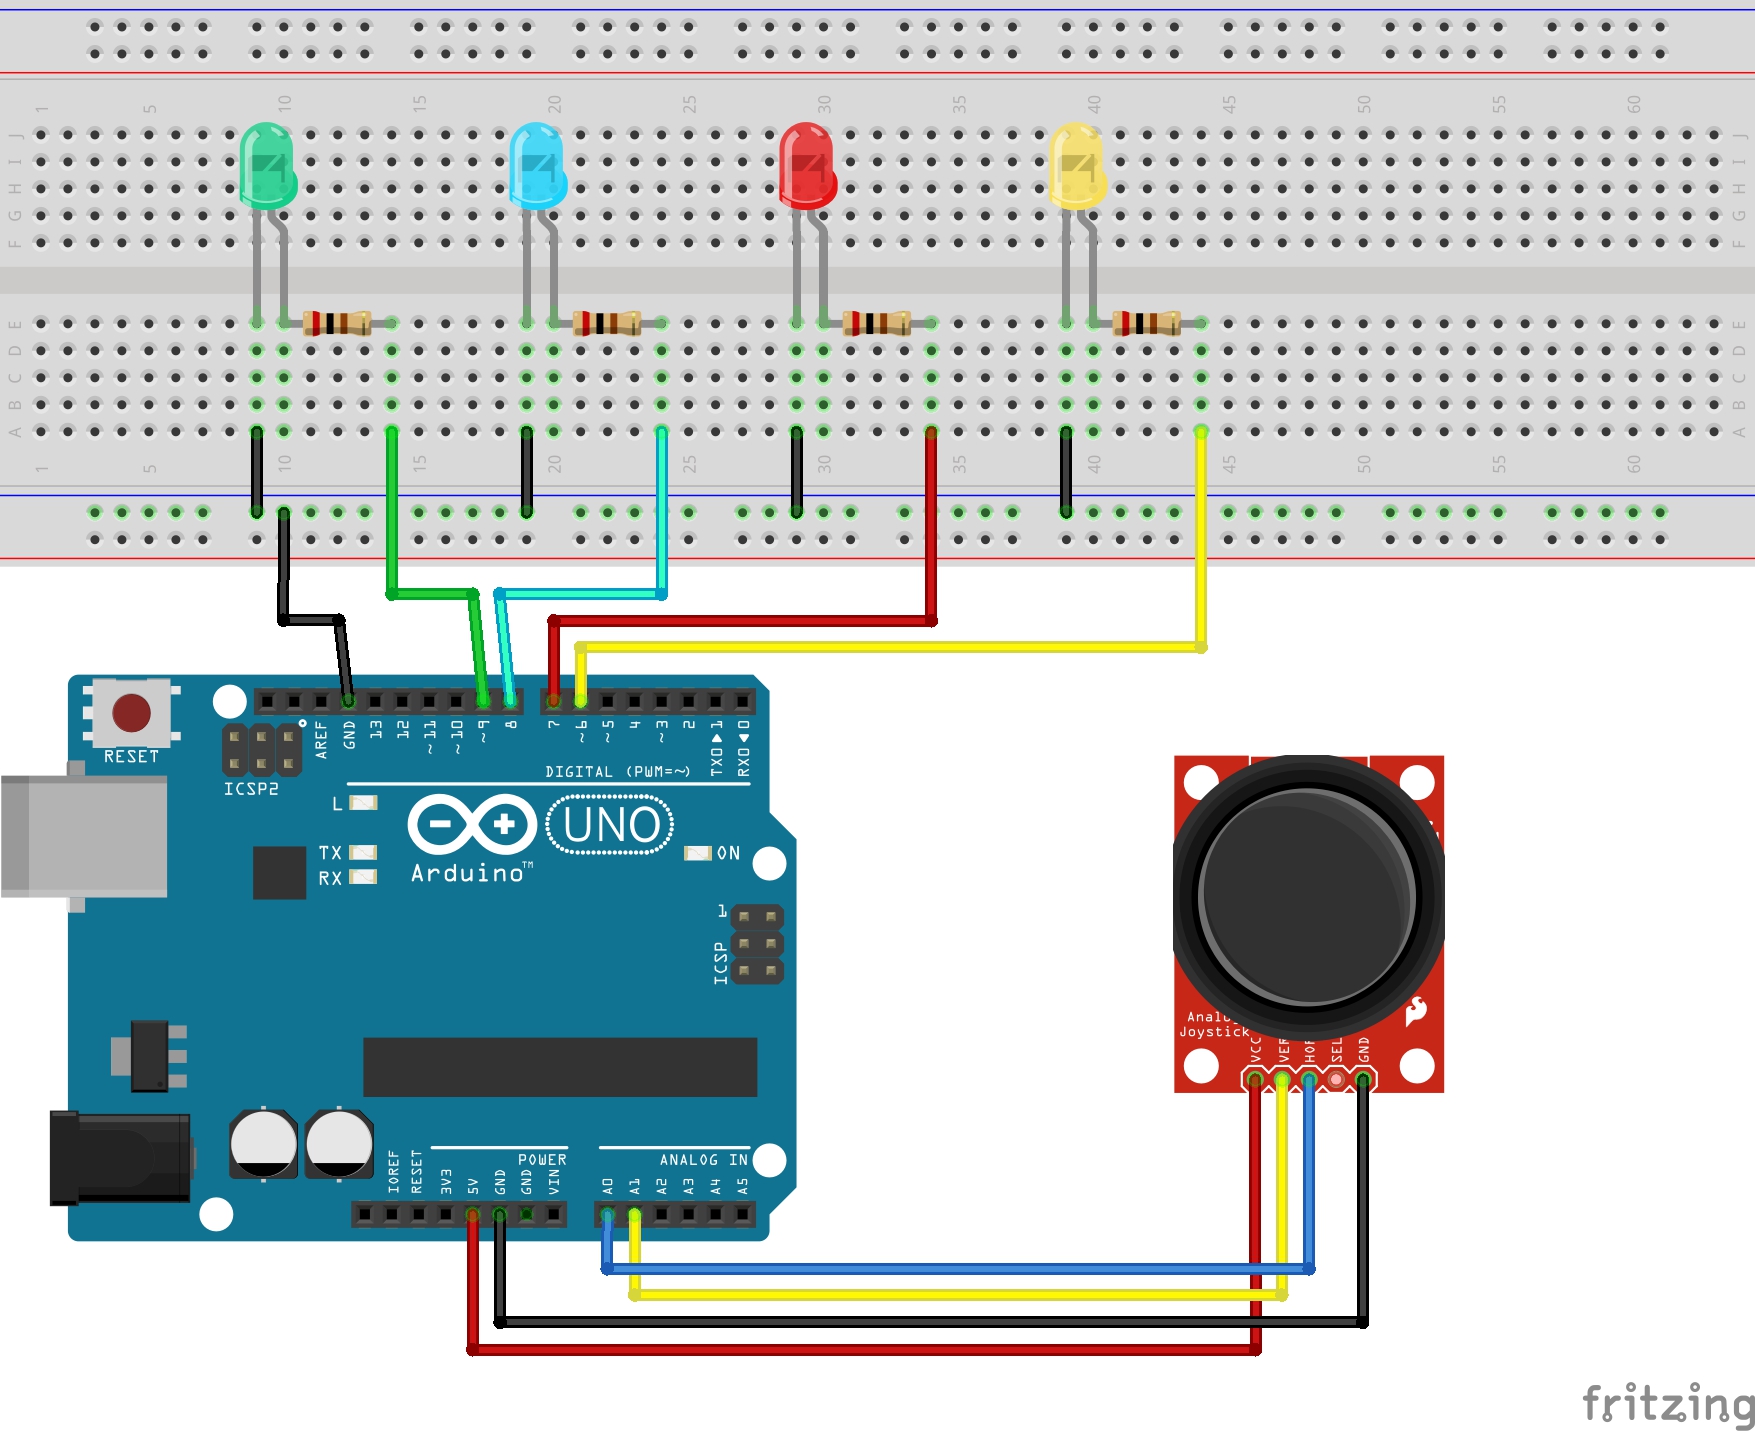 Arduino джойстик. Схема подключения сервопривода к ардуино с джойстиком. Контроллер Arduino uno. Схема ардуино уно с светодиодами. Arduino Nano джойстик hw 504.